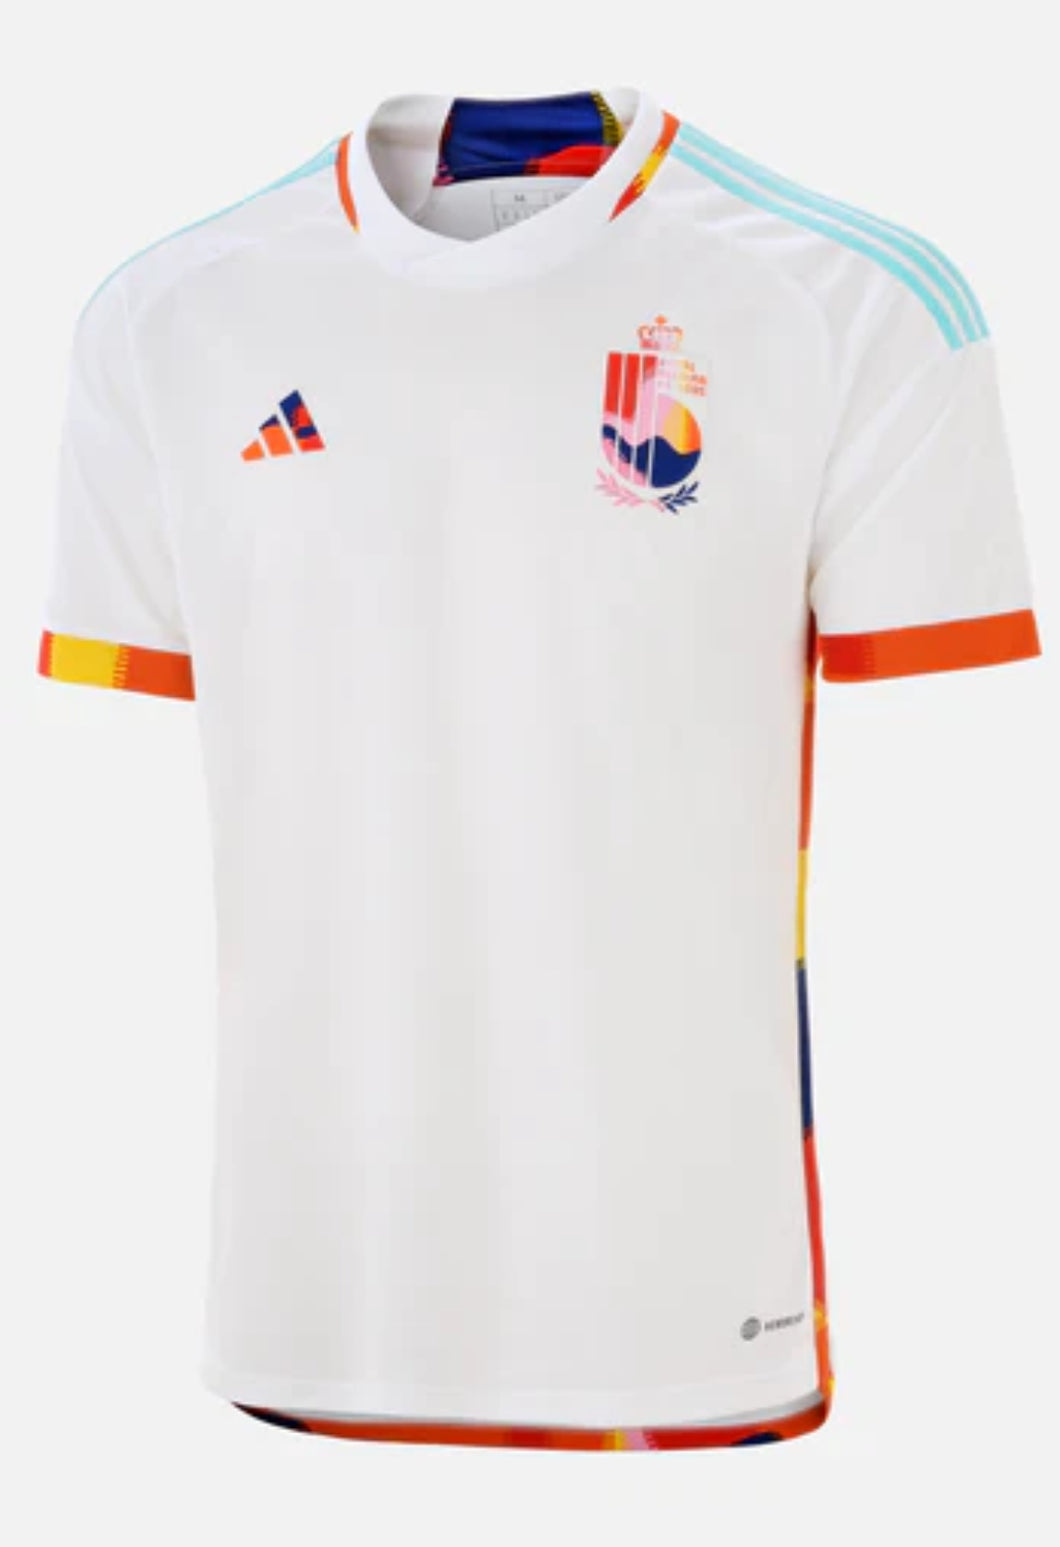 Belgium National Team Kits, Belgium Shirt, Home & Away Kit